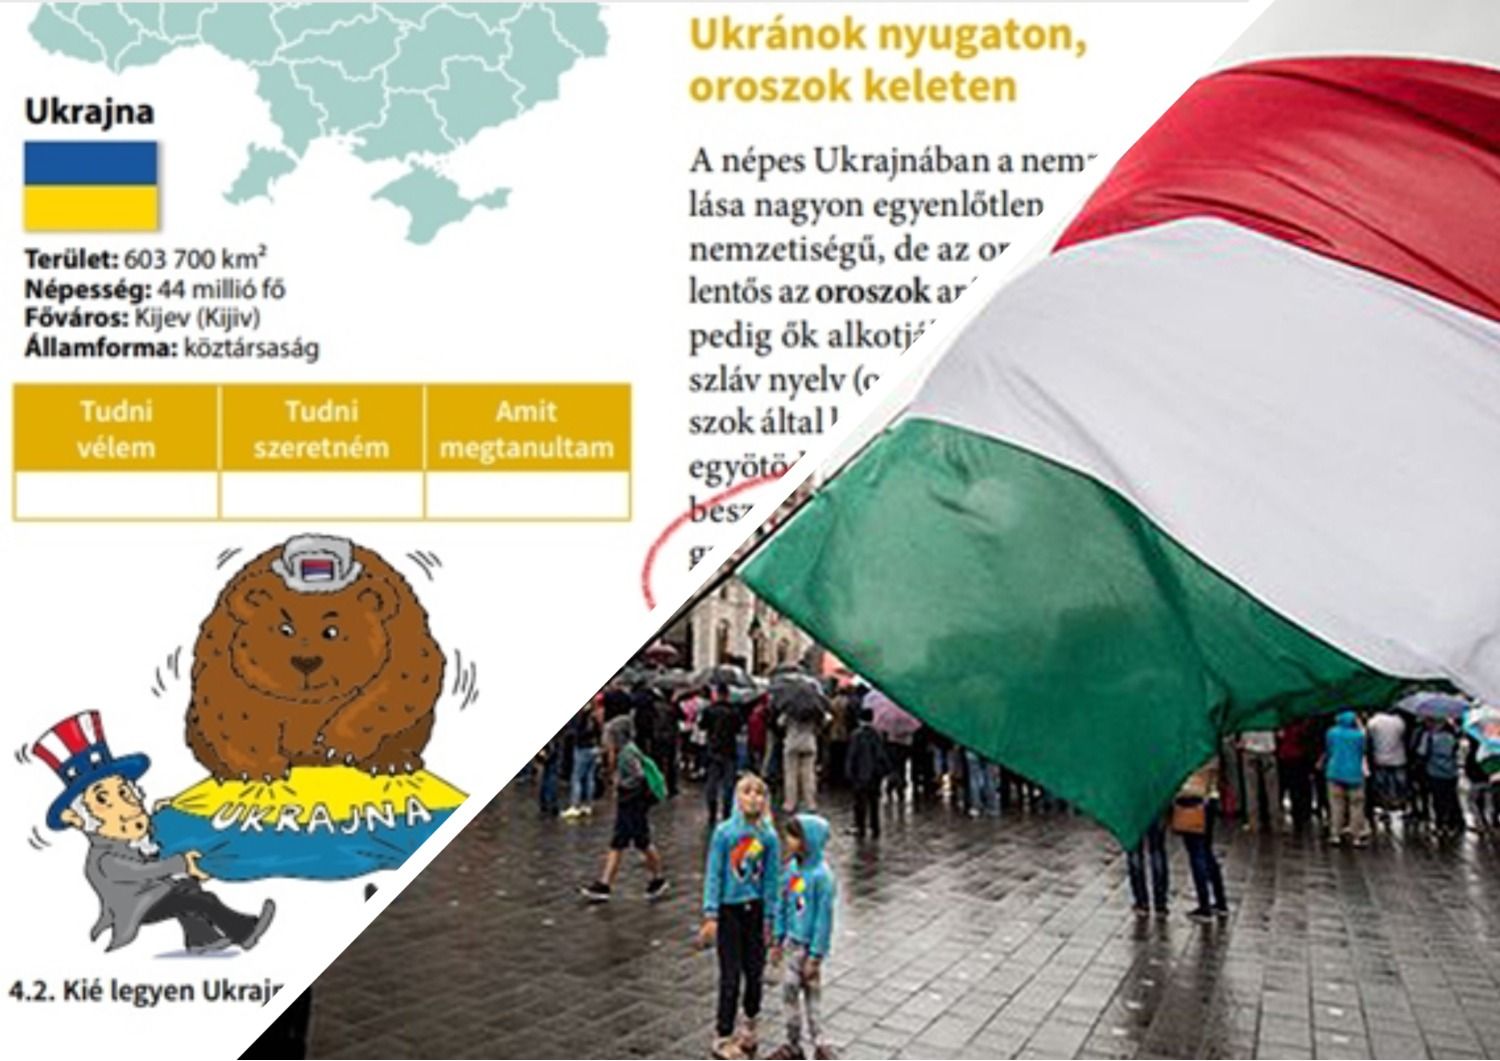 Пропаганда Росії - чи зазнає змін скандальний угорський підручник з брехнею про Україну - Освіта